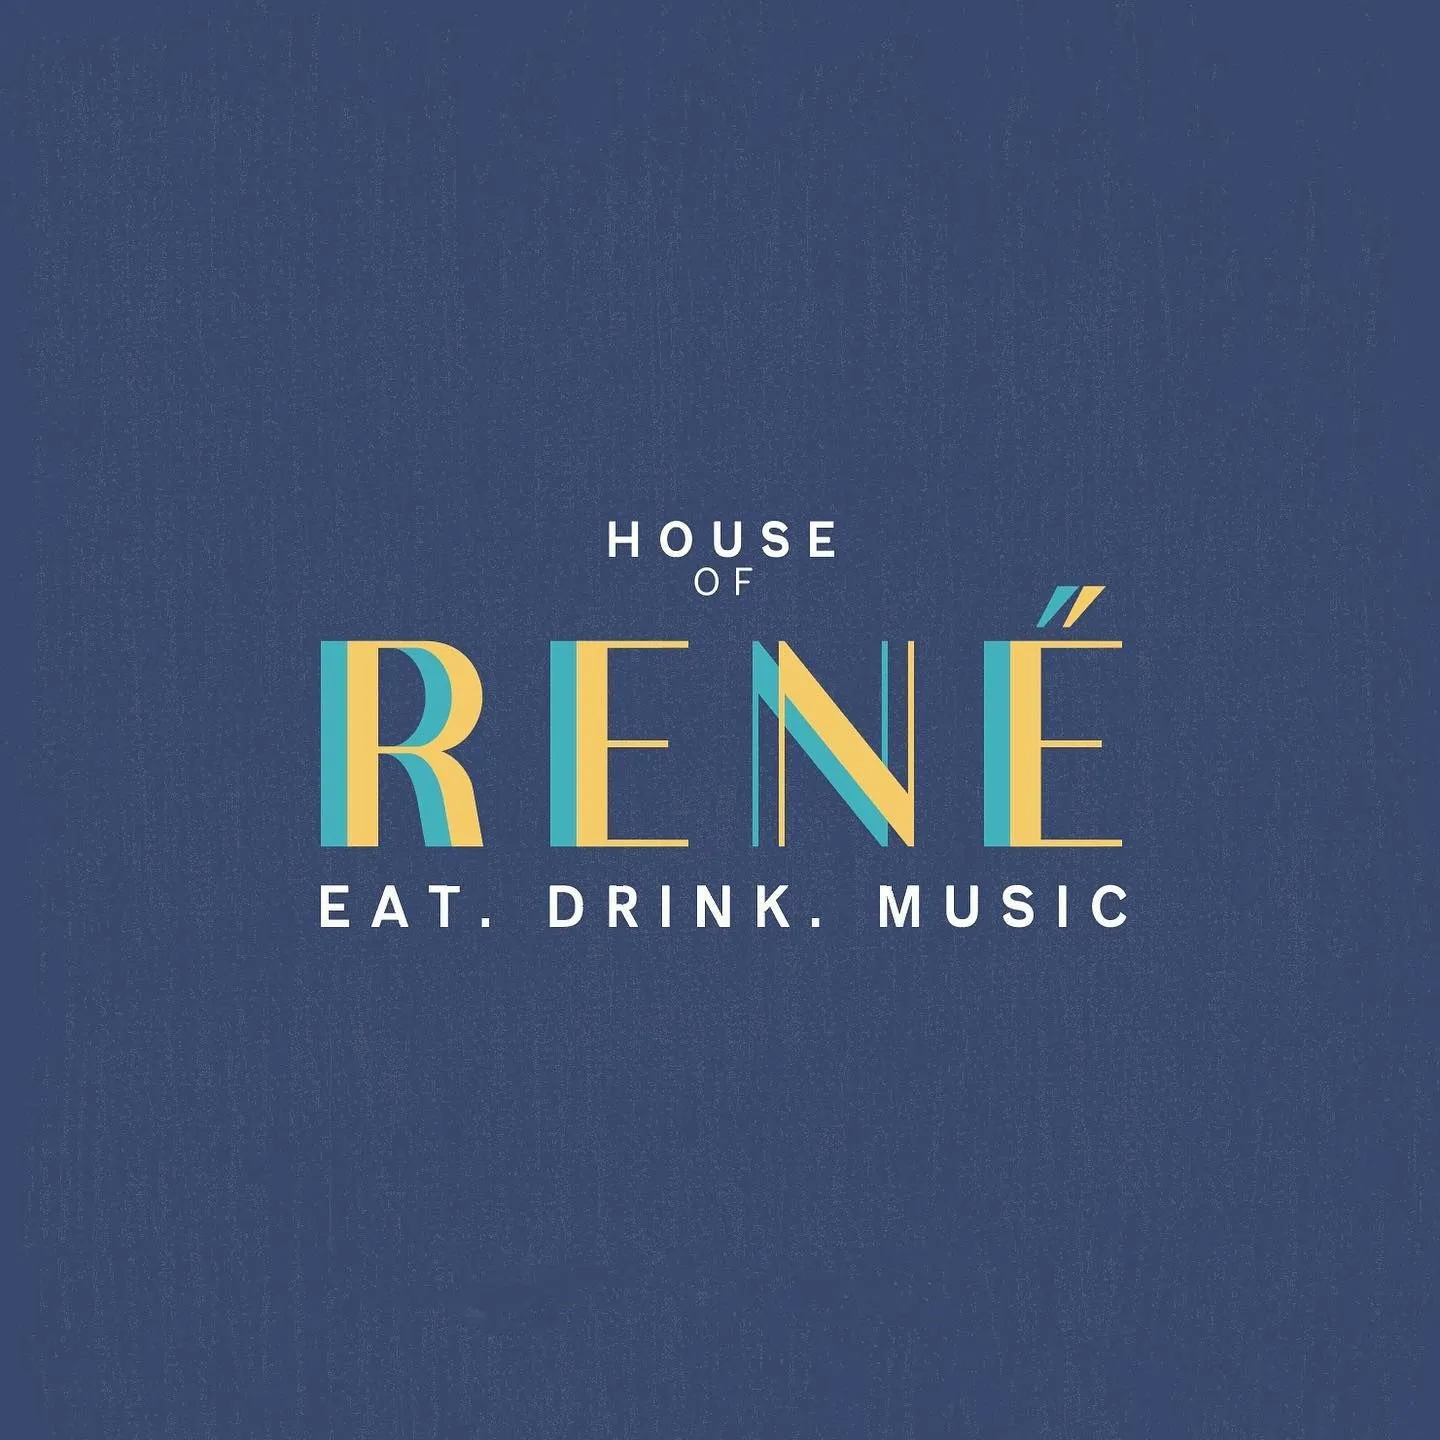 Avatar of House of Rene